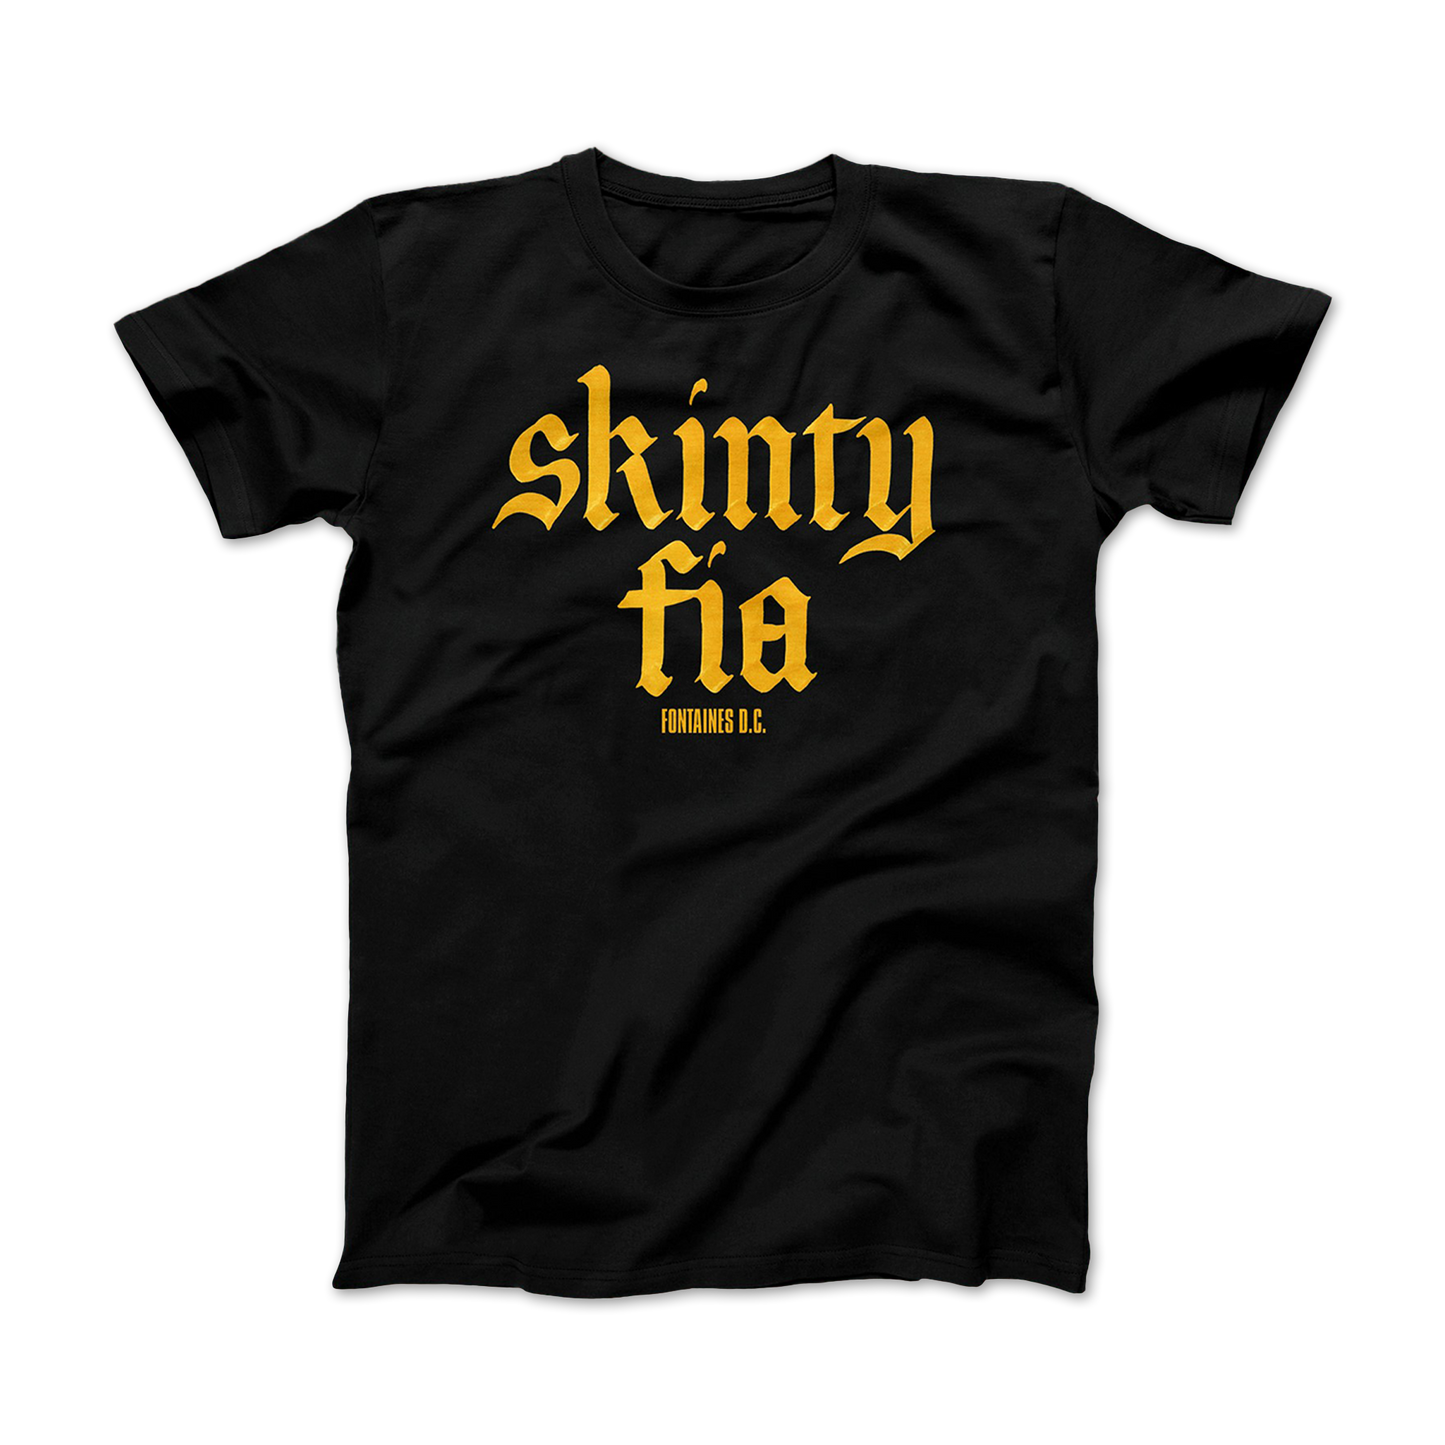 Skinty Fia T-shirt